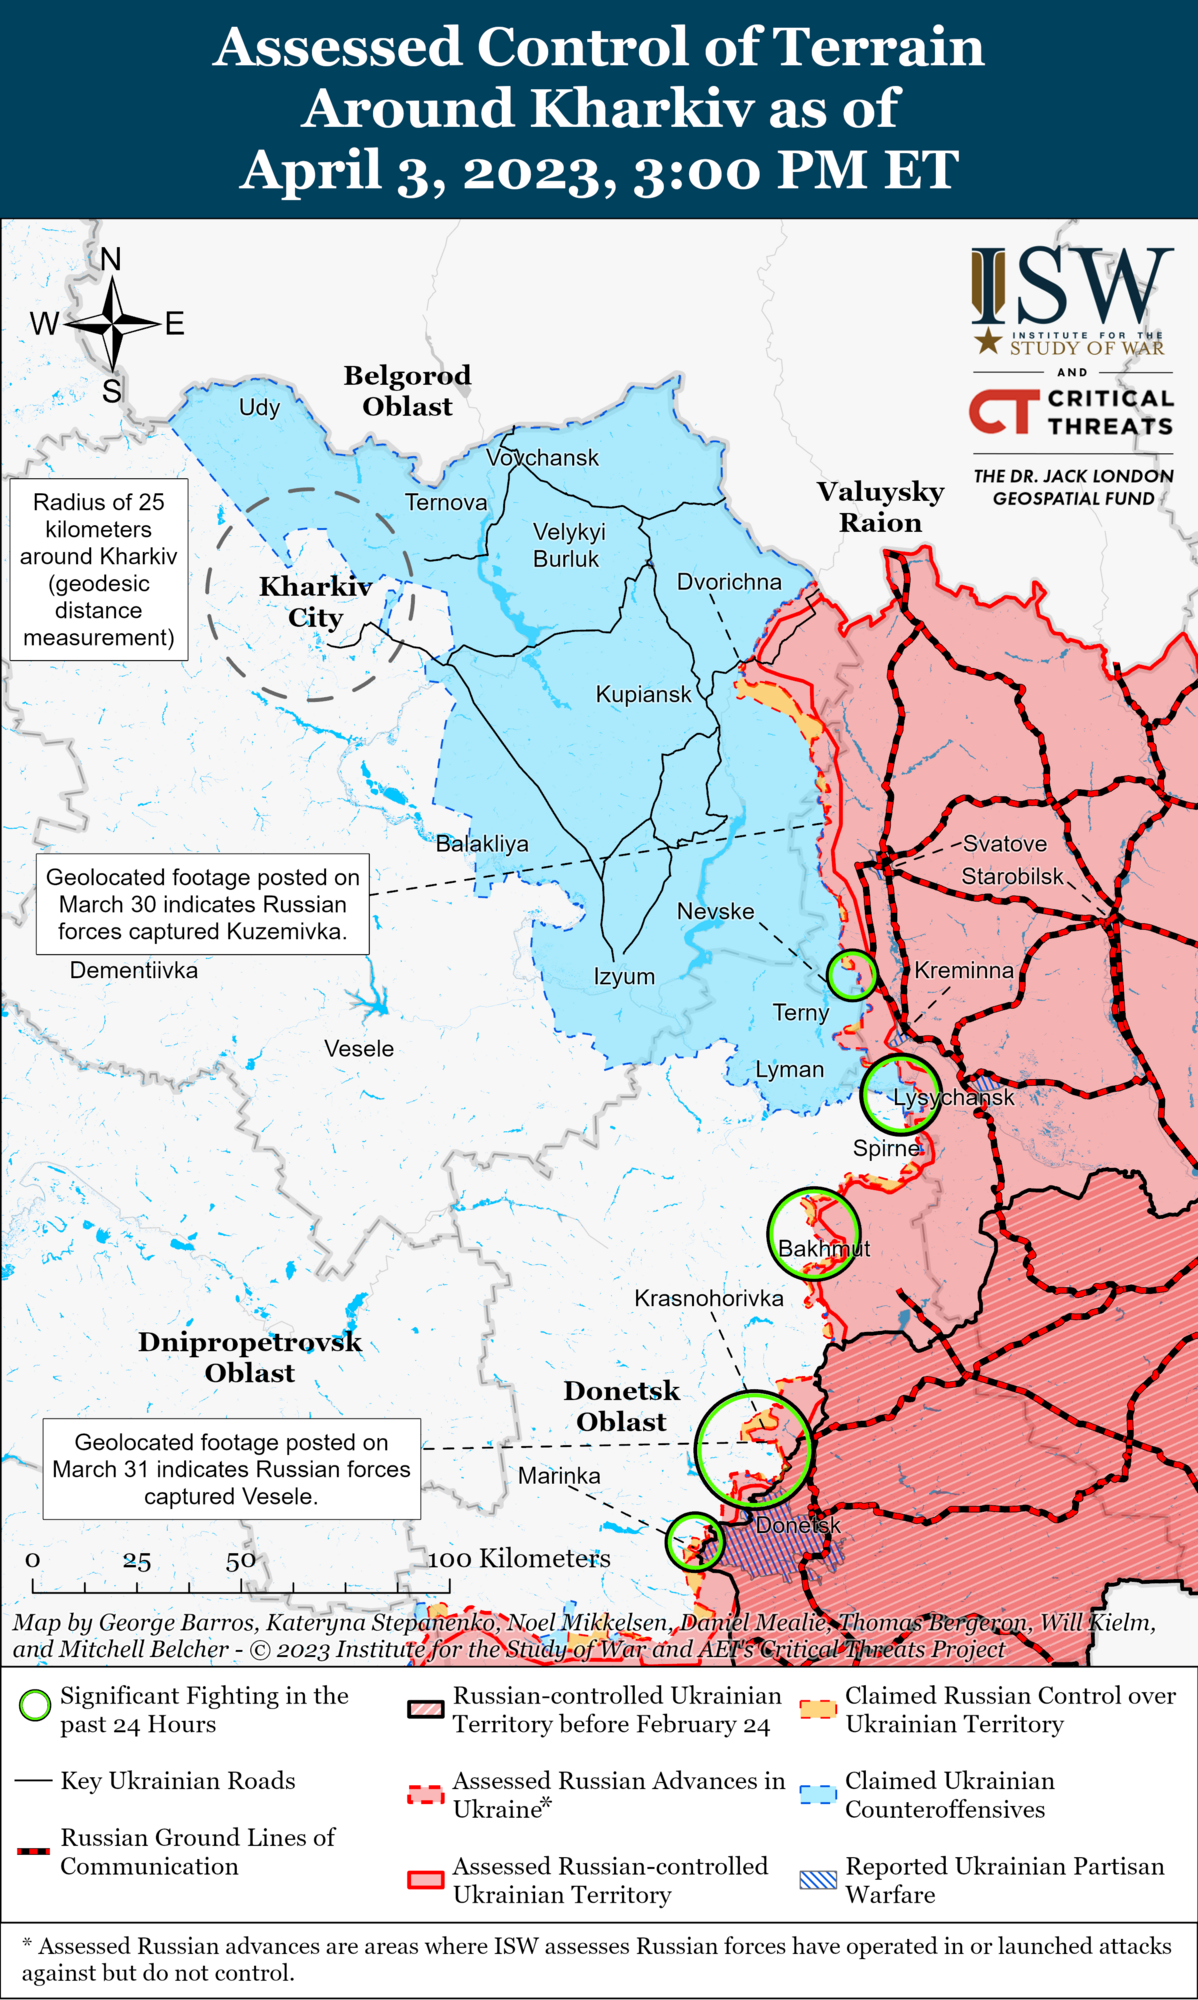 Міноборони РФ похвалилося перекиданням "Сонцепьоків" в Україну: в ISW вказали на марність надій окупантів